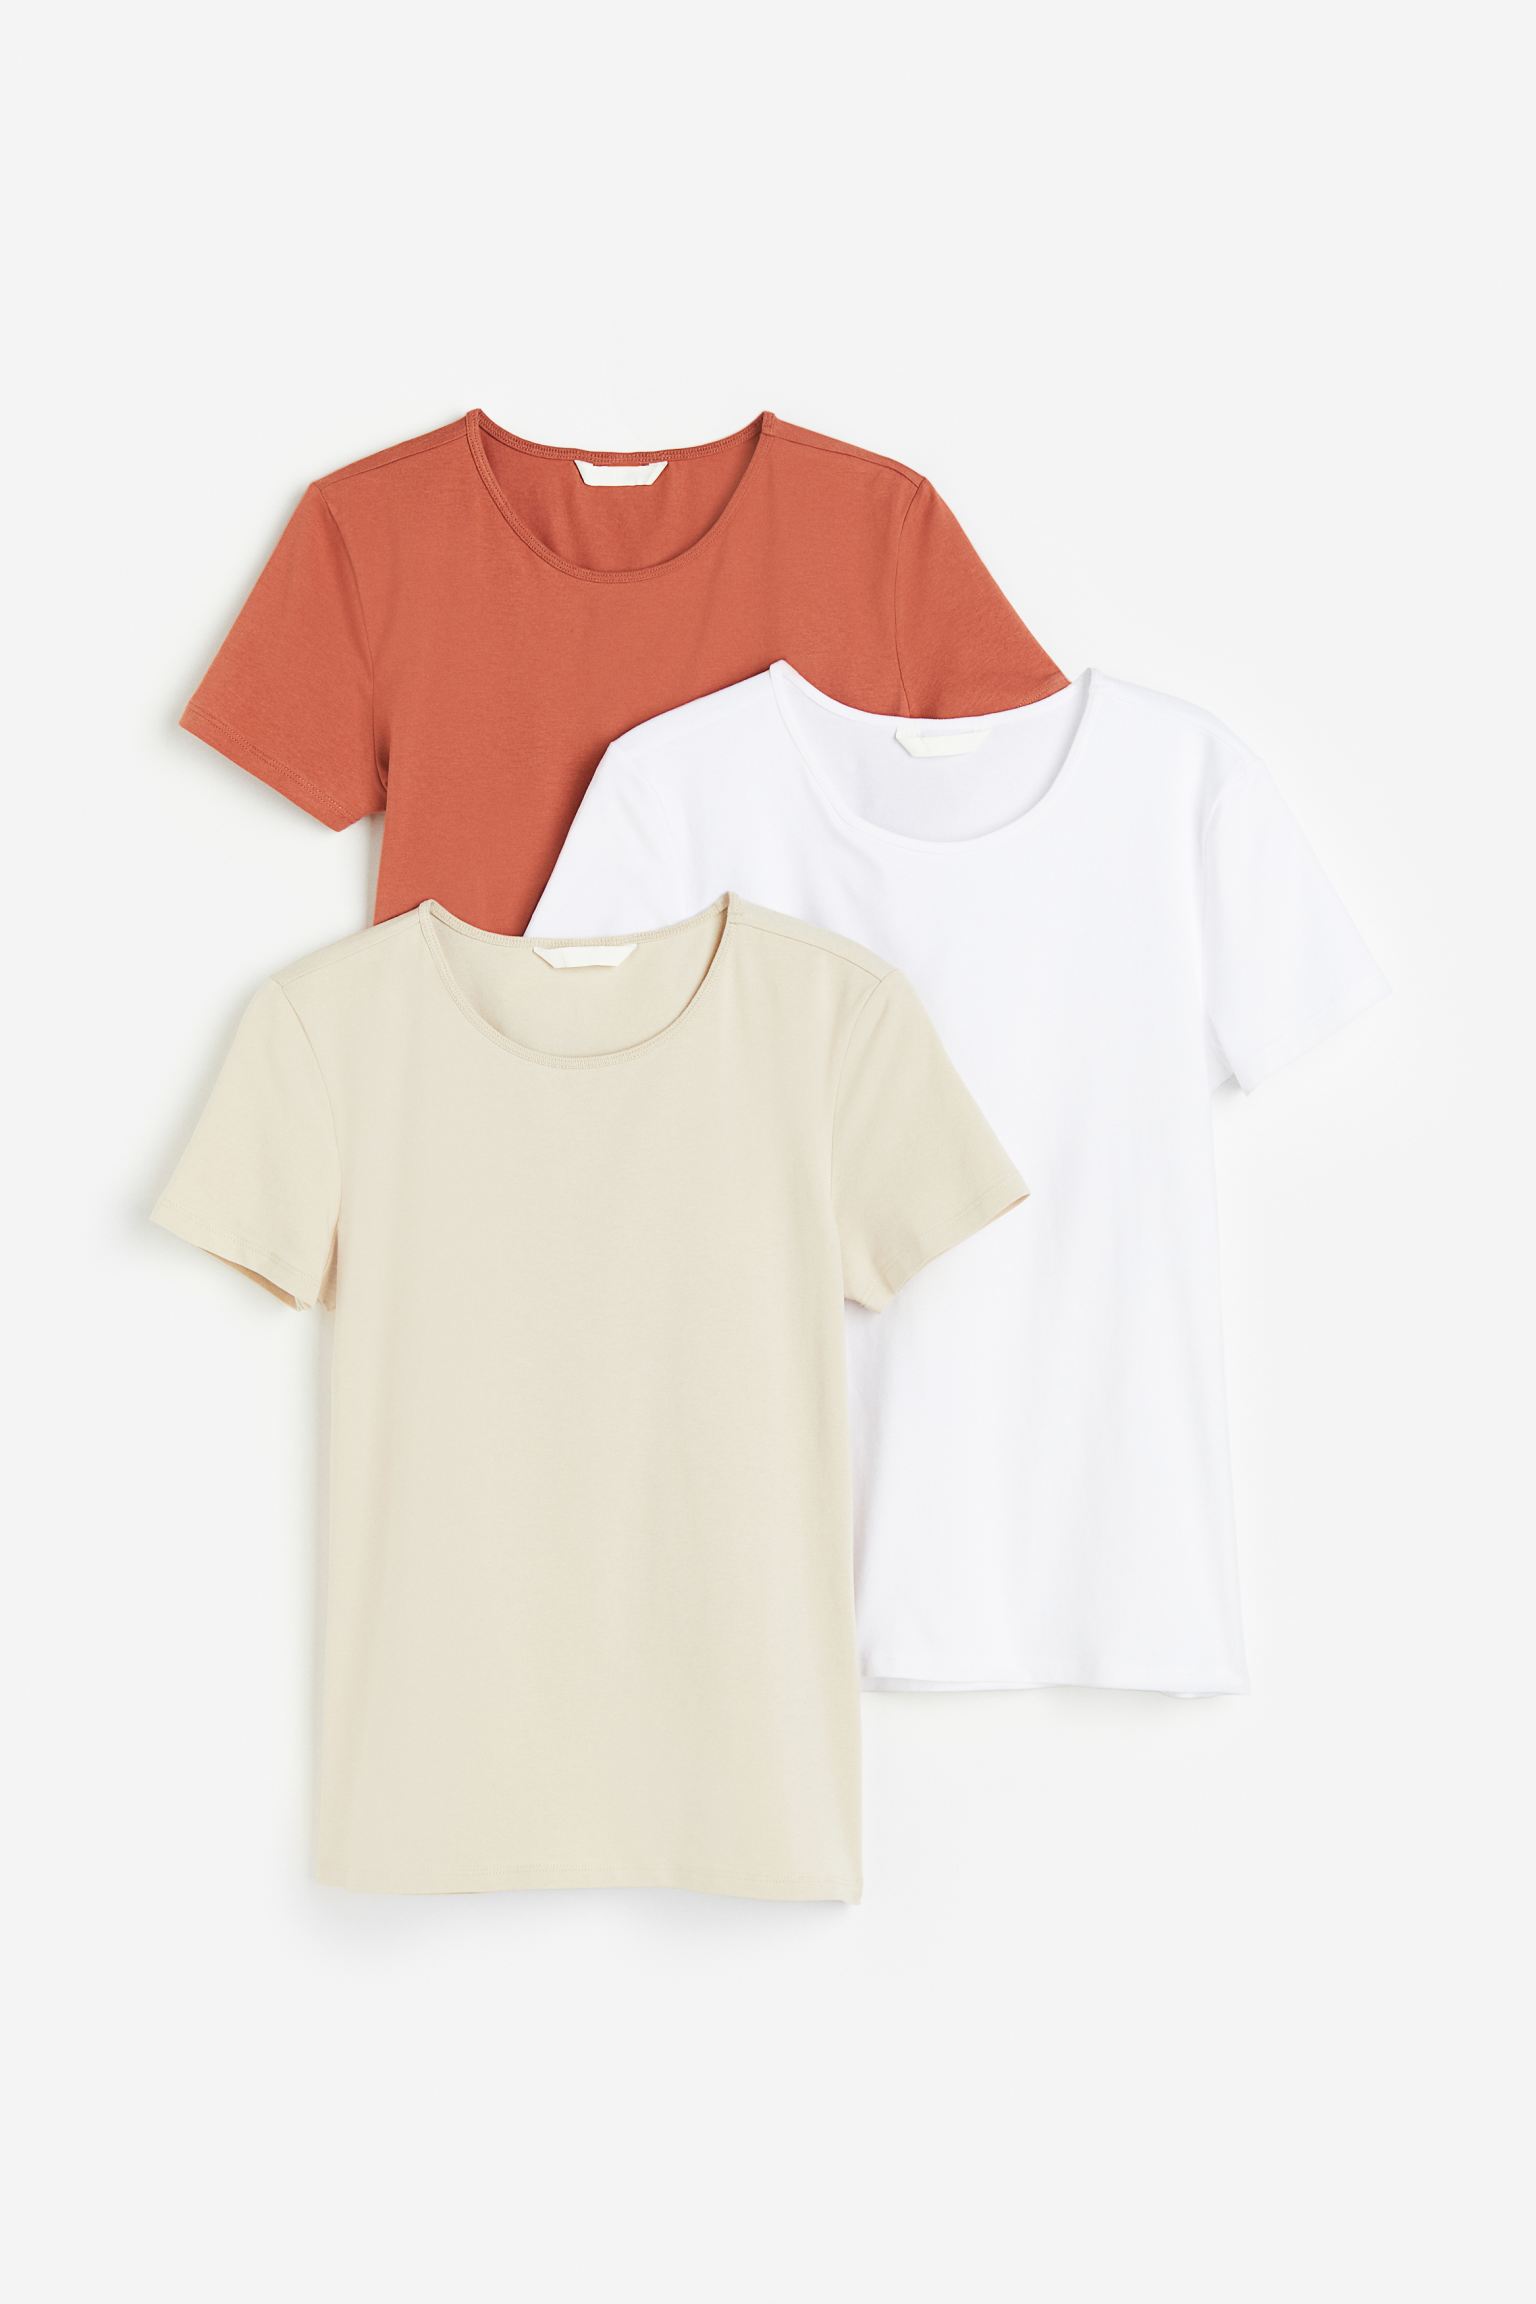 Комплект футболок женских H&M 1166415003 оранжевых L (доставка из-за рубежа)